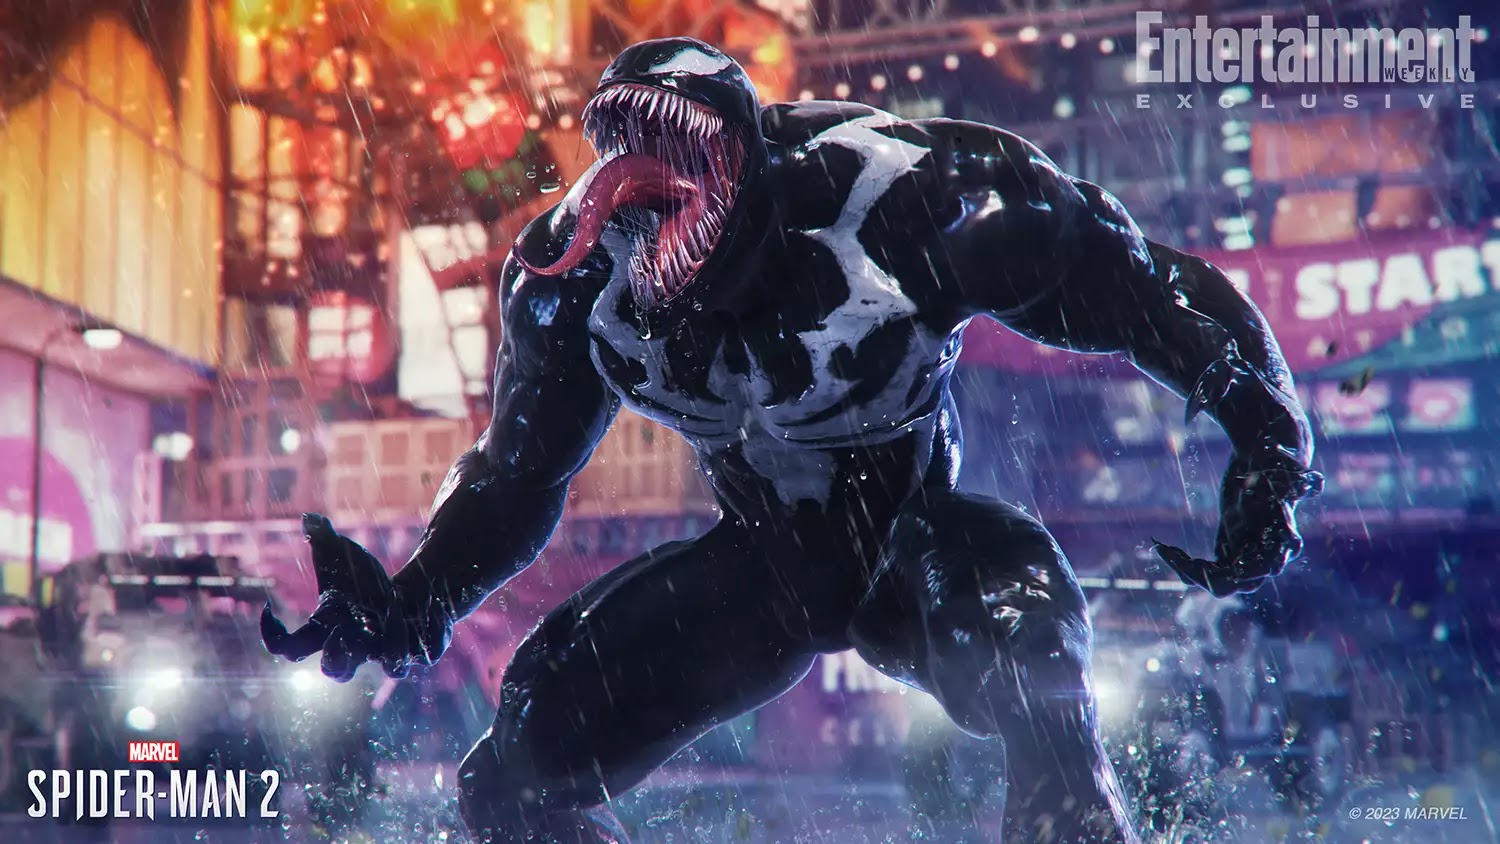 Marvel s Spider-Man 2 é o primeiro jogo da Insomniac a receber nota acima  de 90 no Metacritic desde Ratchet & Clank de 2004